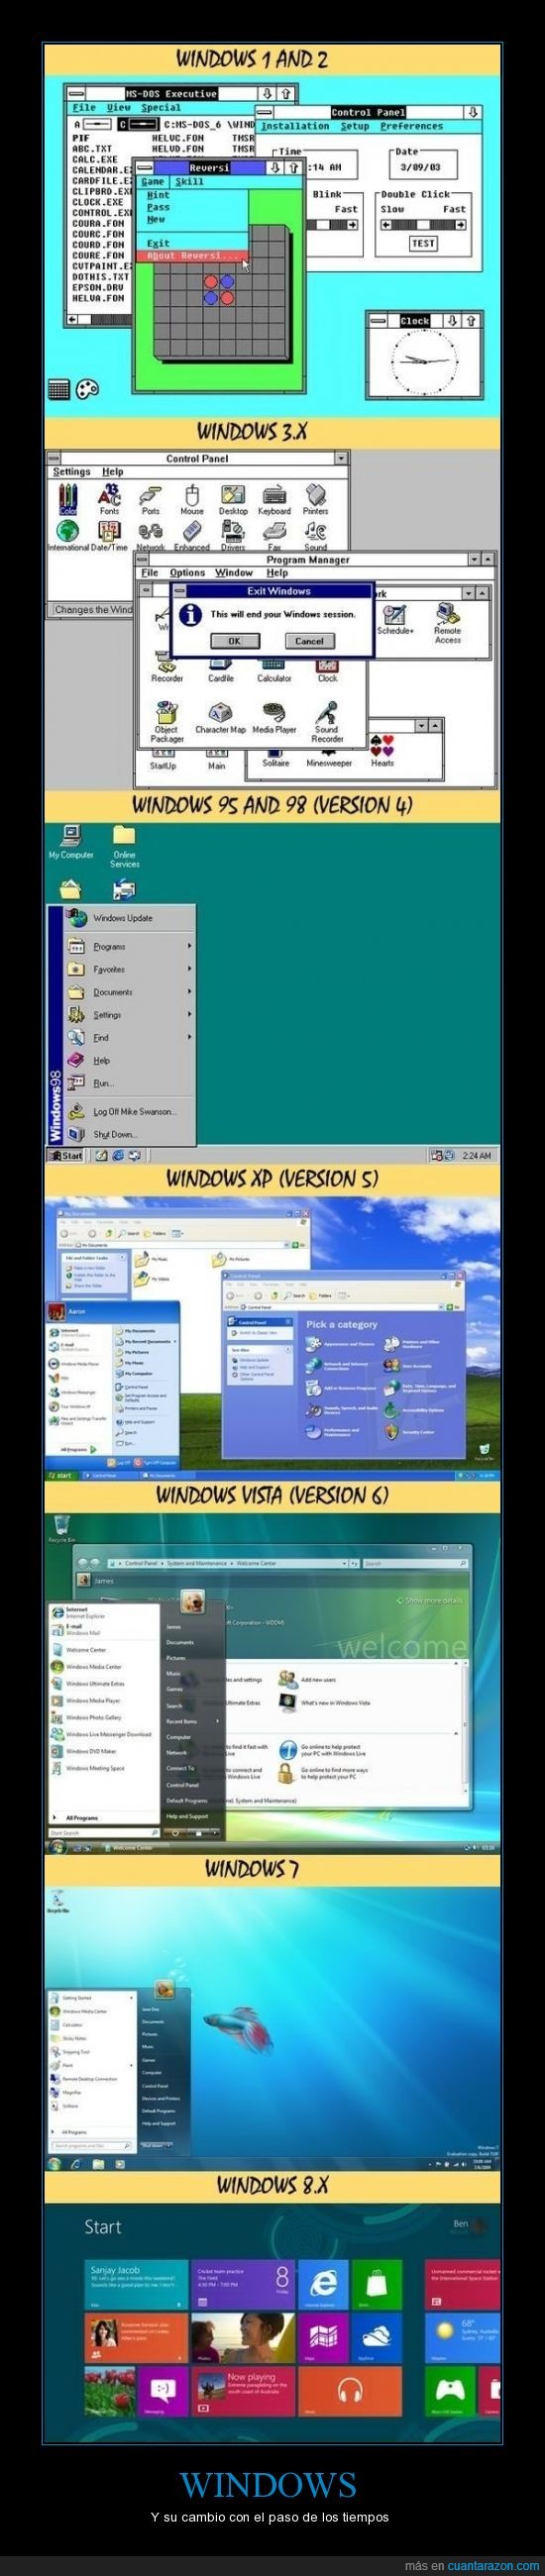 microsoft,windows,cambios,tiempo,inicio,evolucion